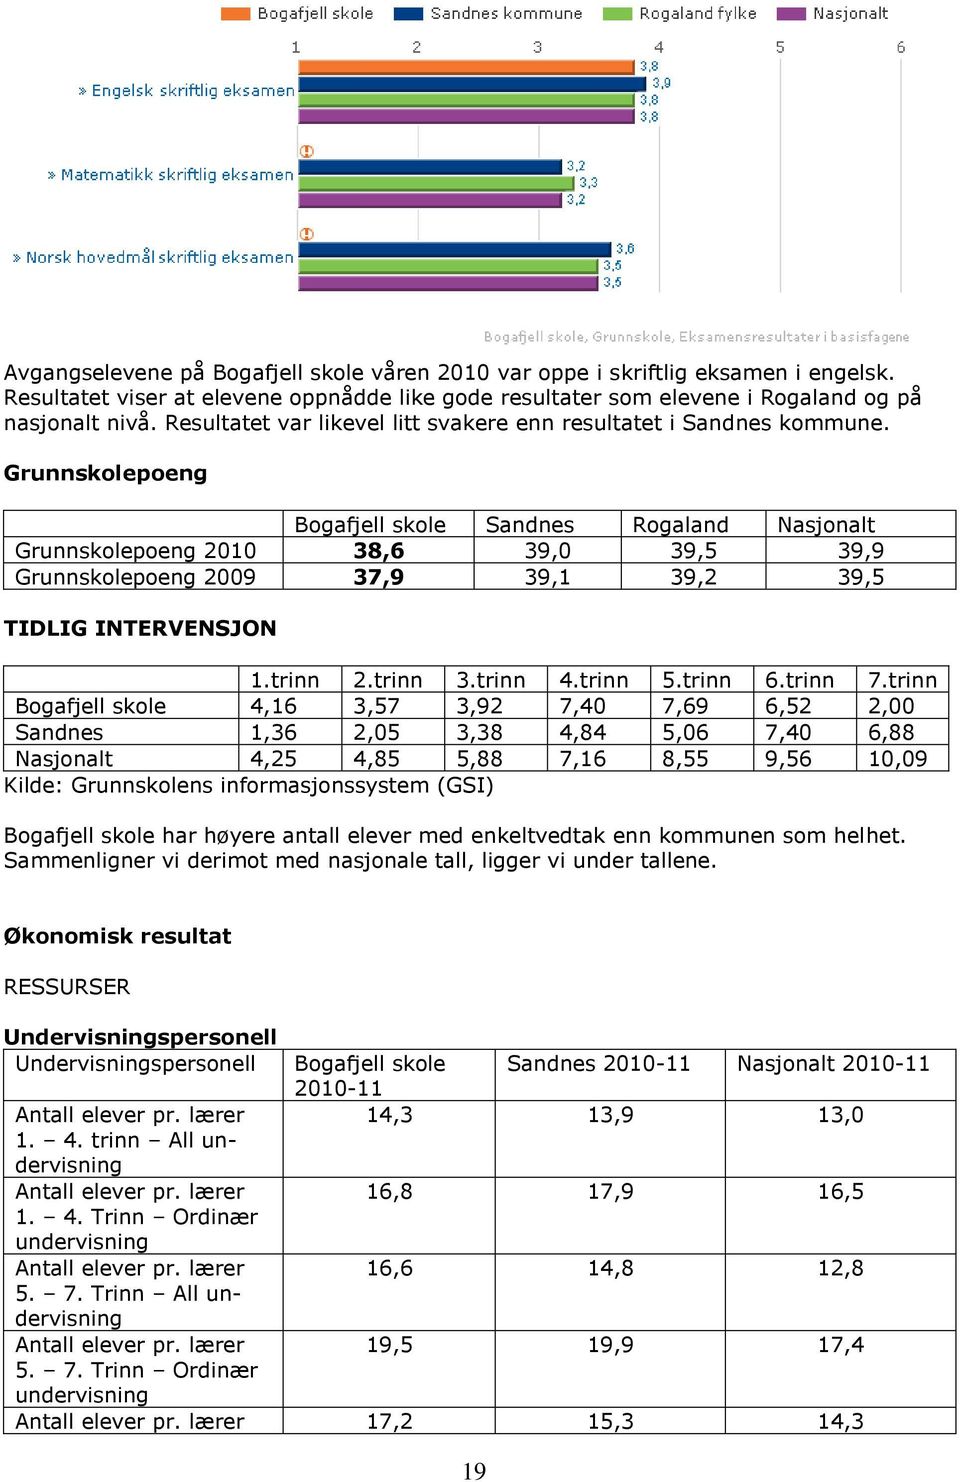 Grunnskolepoeng Bogafjell skole Sandnes Rogaland Nasjonalt Grunnskolepoeng 2010 38,6 39,0 39,5 39,9 Grunnskolepoeng 2009 37,9 39,1 39,2 39,5 TIDLIG INTERVENSJON 1.trinn 2.trinn 3.trinn 4.trinn 5.